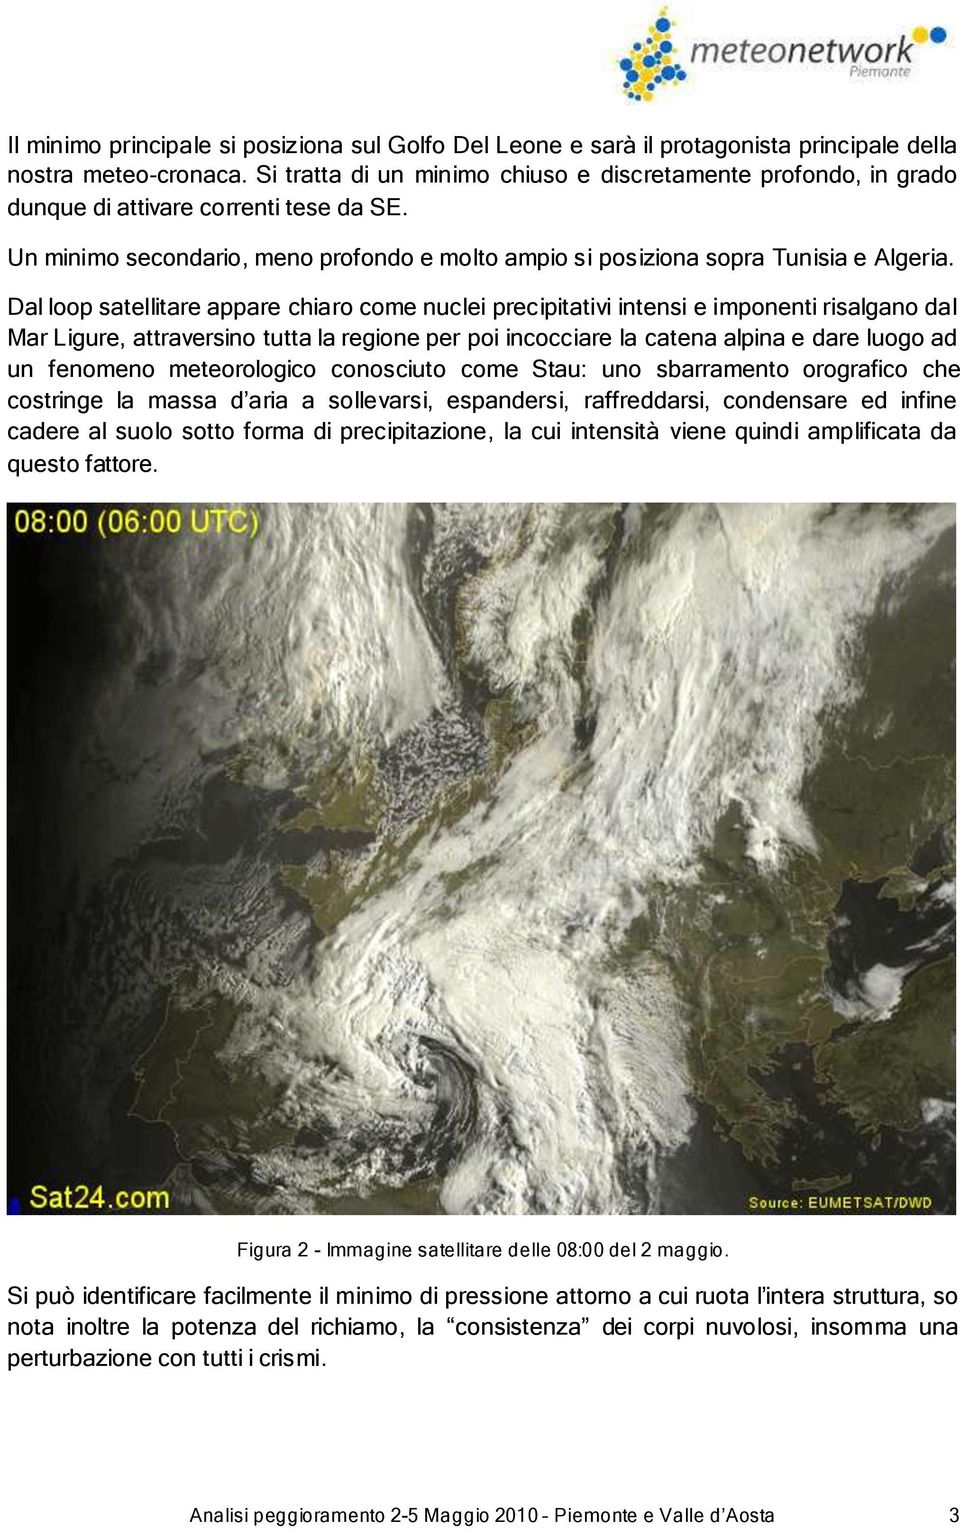 Dal loop satellitare appare chiaro come nuclei precipitativi intensi e imponenti risalgano dal Mar Ligure, attraversino tutta la regione per poi incocciare la catena alpina e dare luogo ad un